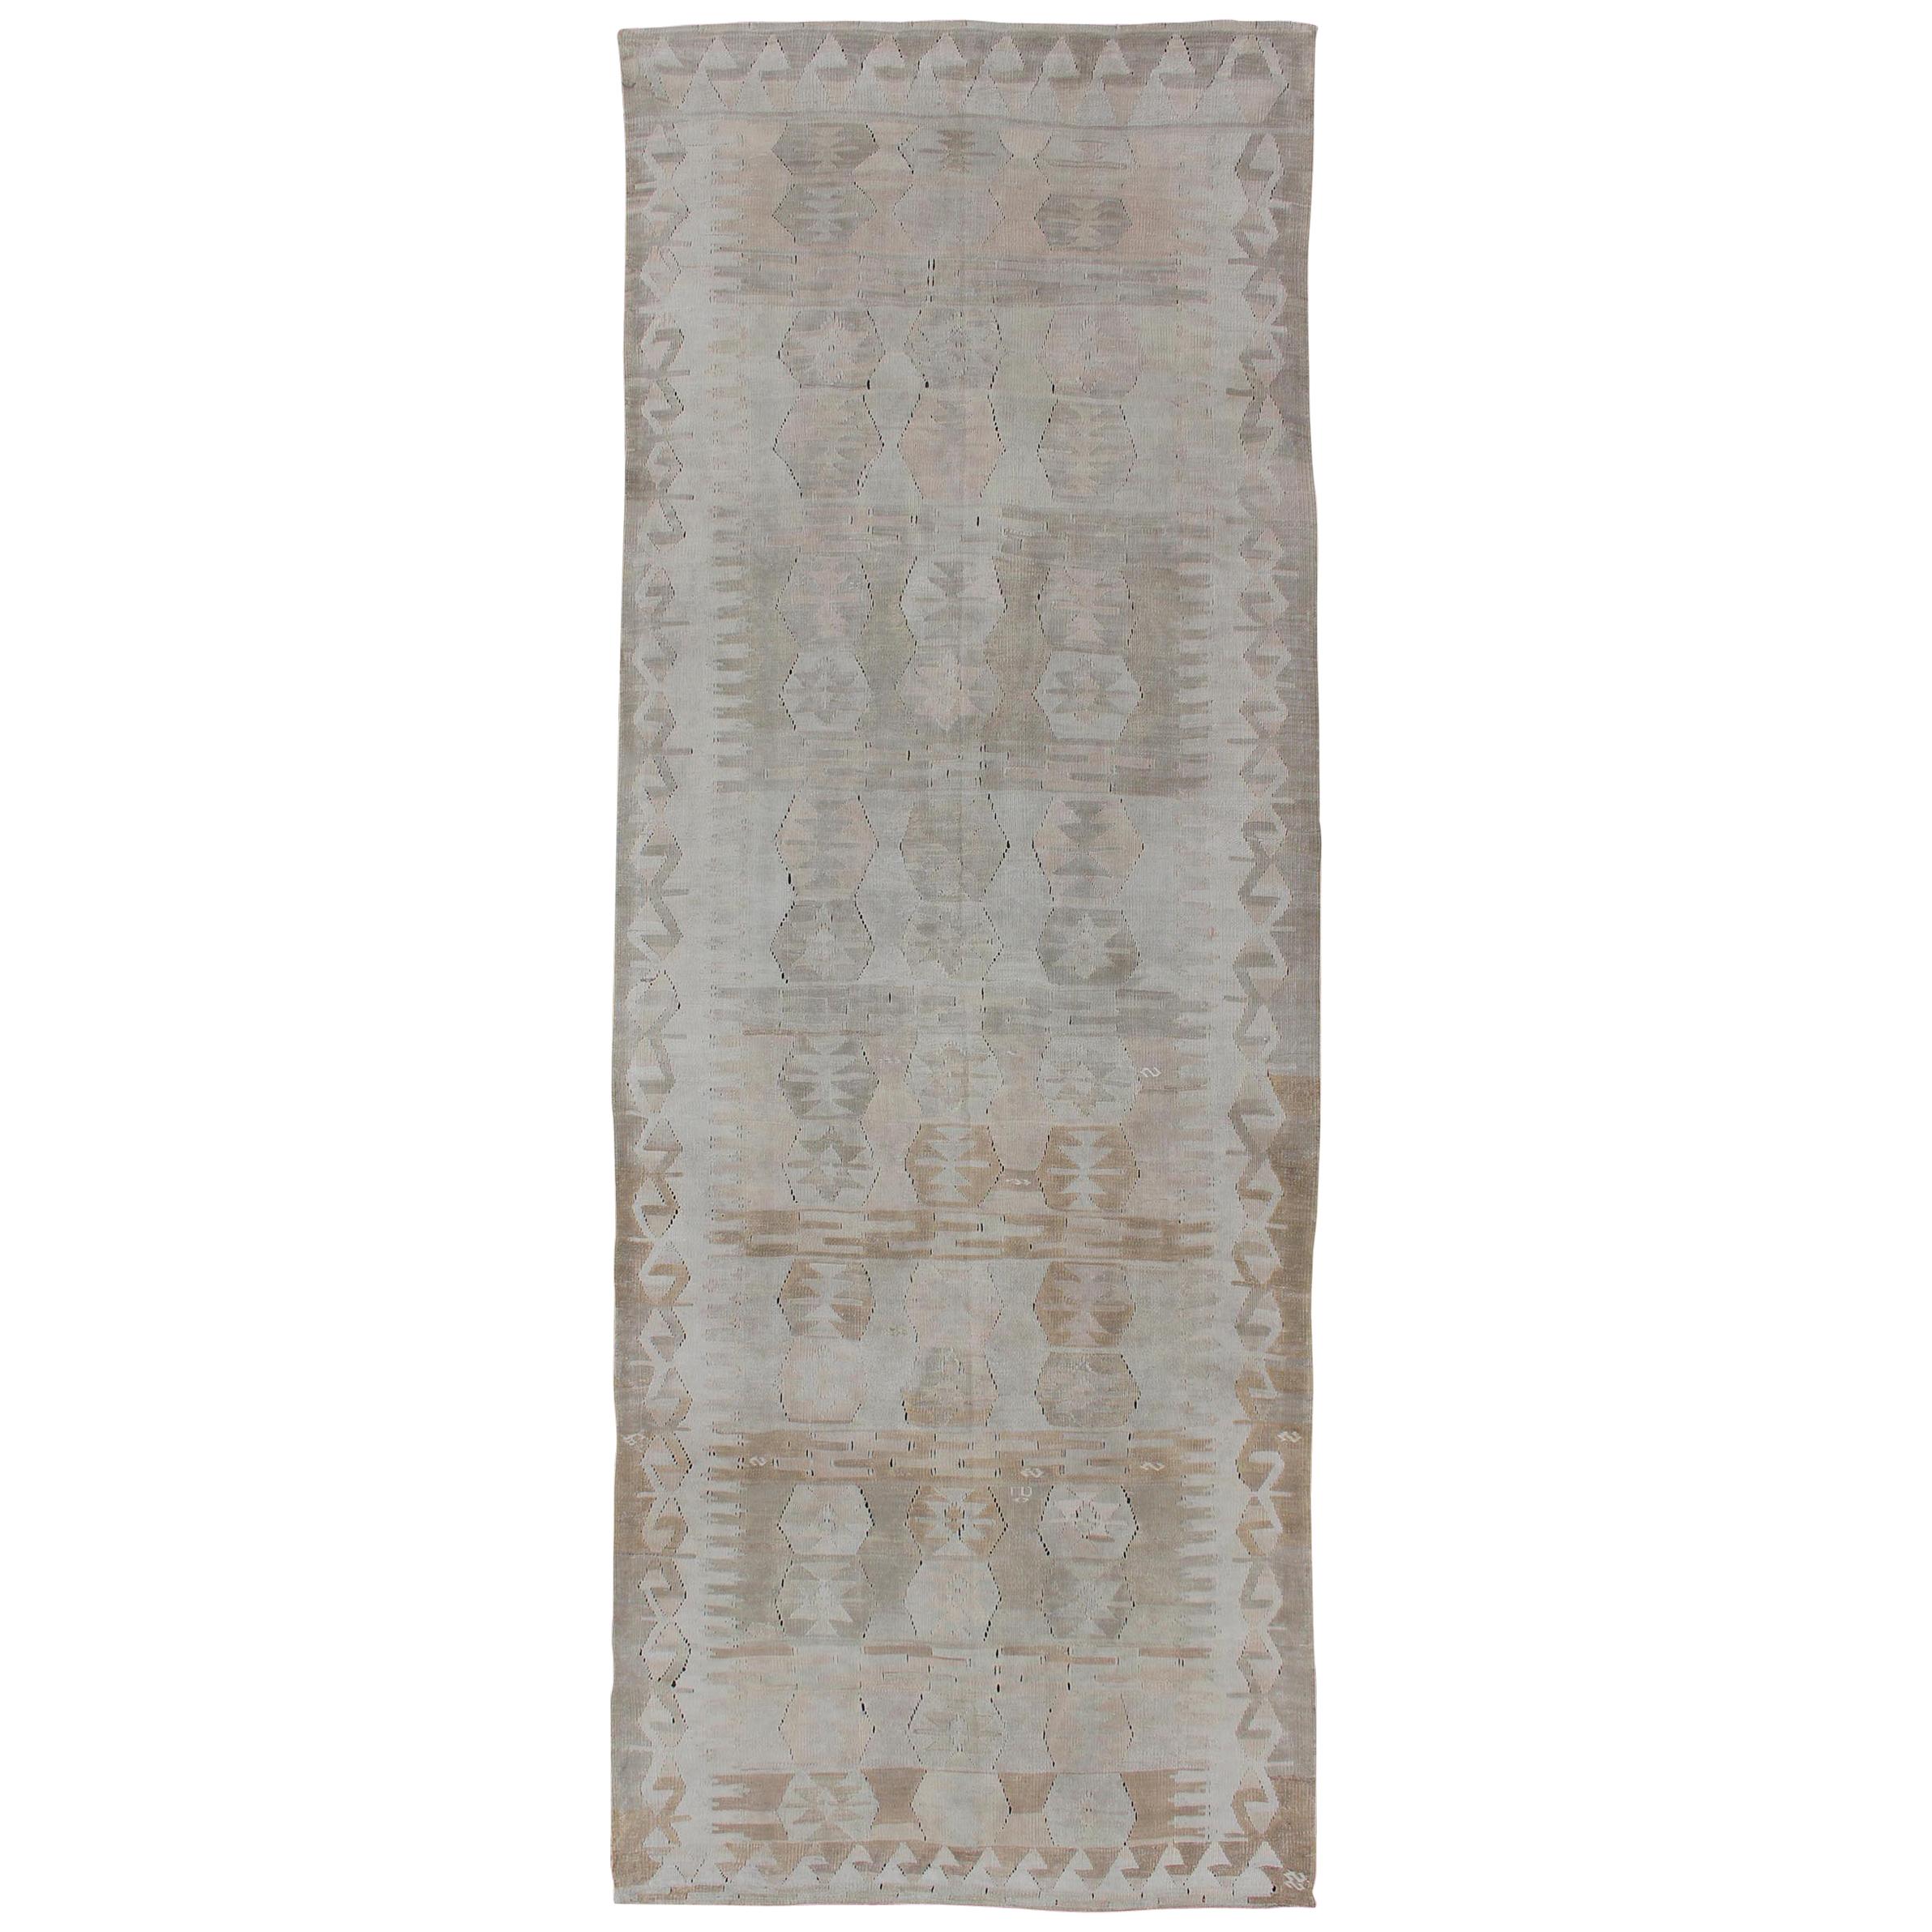 Antiker türkischer Flachgewebe-Galerie-Teppich aus Kelim in Elfenbein, Grau und Rosa